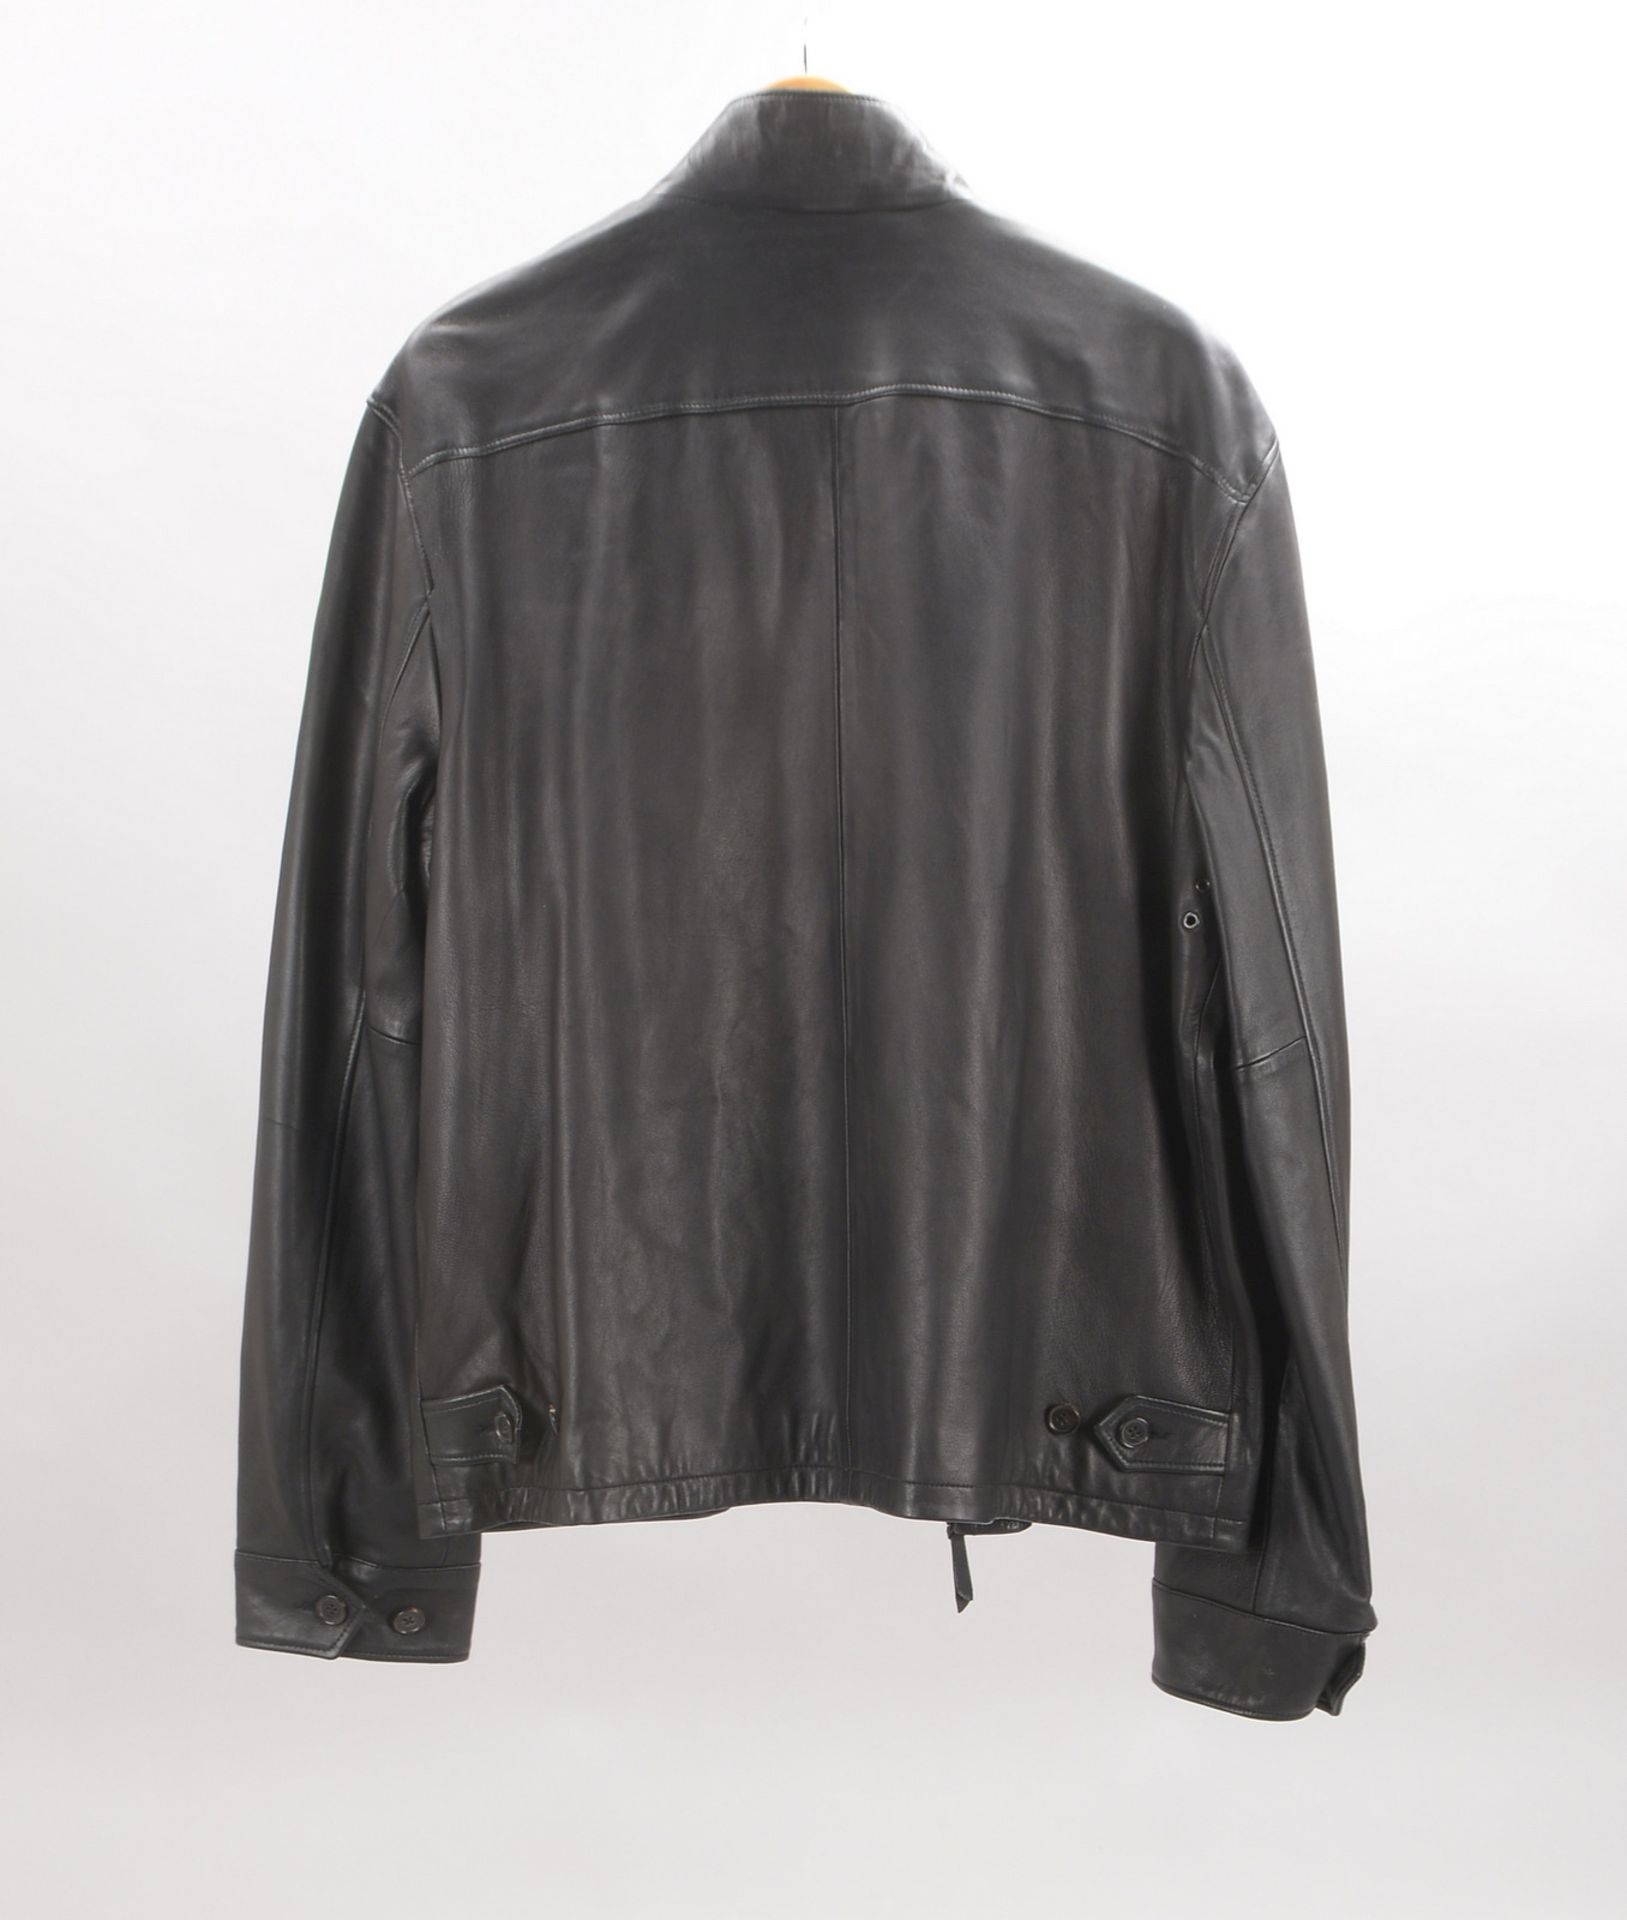 Ralph Lauren, Herren-Lederjacke, schwarzes Leder, Größe 'XL' - getragener Zust. - Bild 2 aus 2